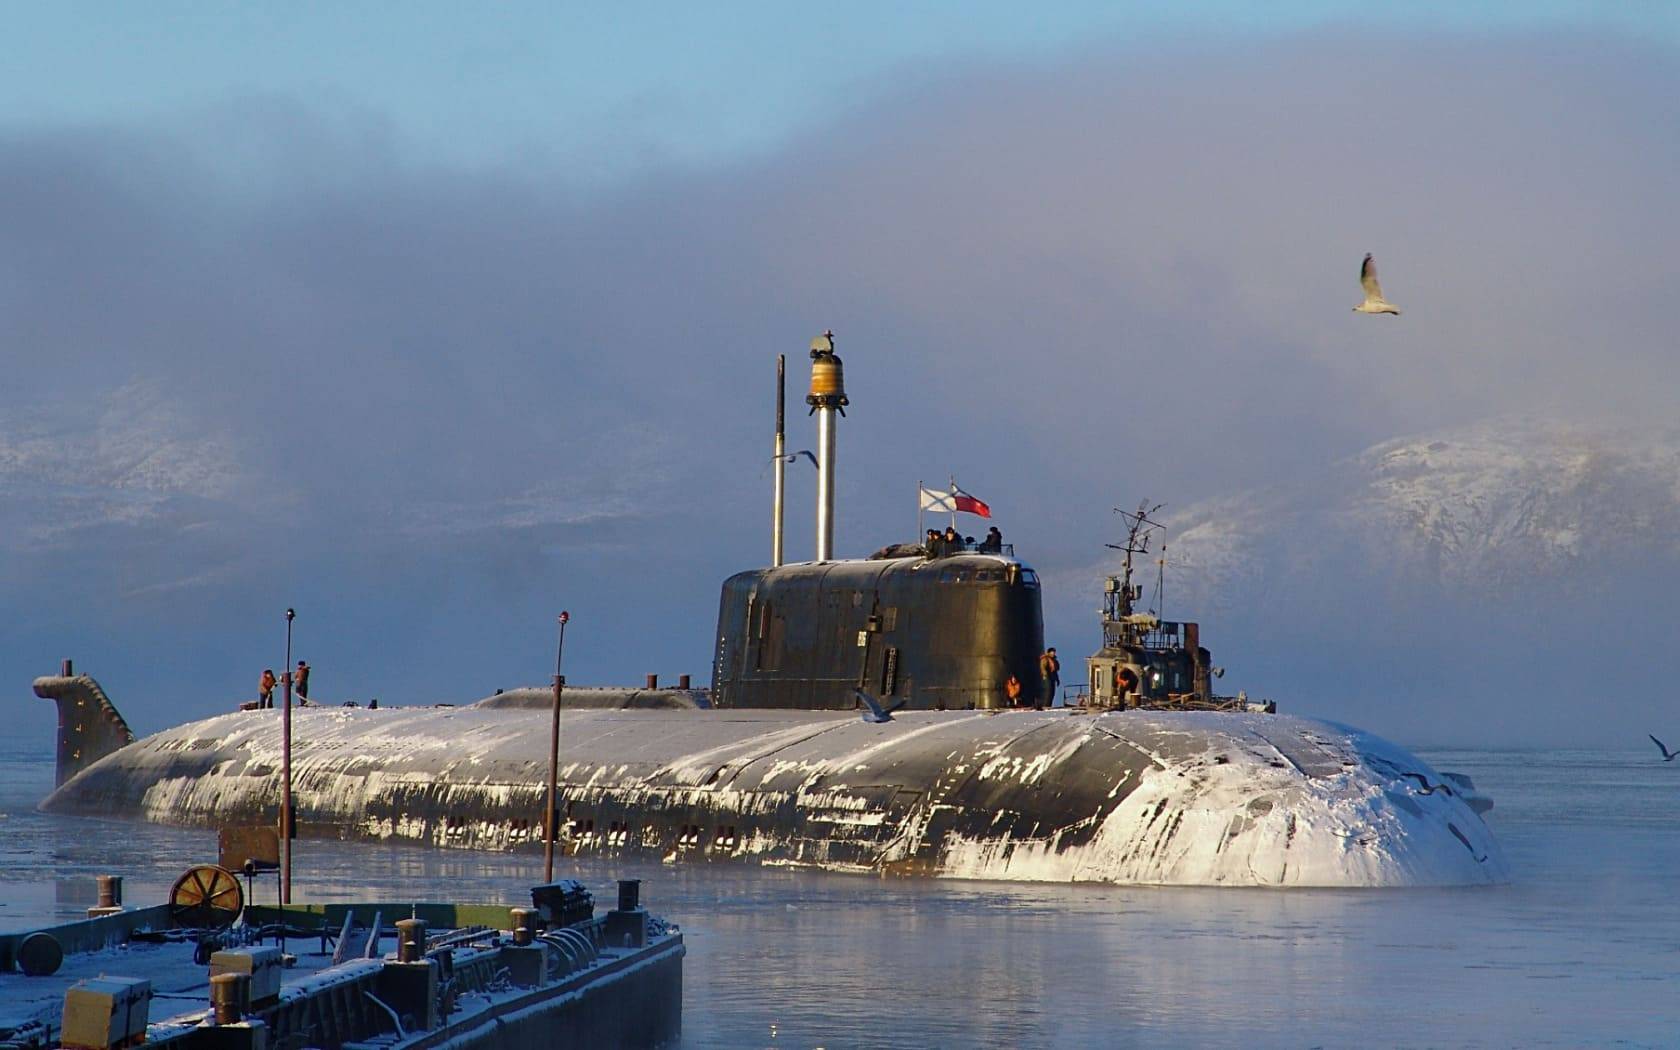 Подводная кругосветка: как советские подлодки обогнули земной шар